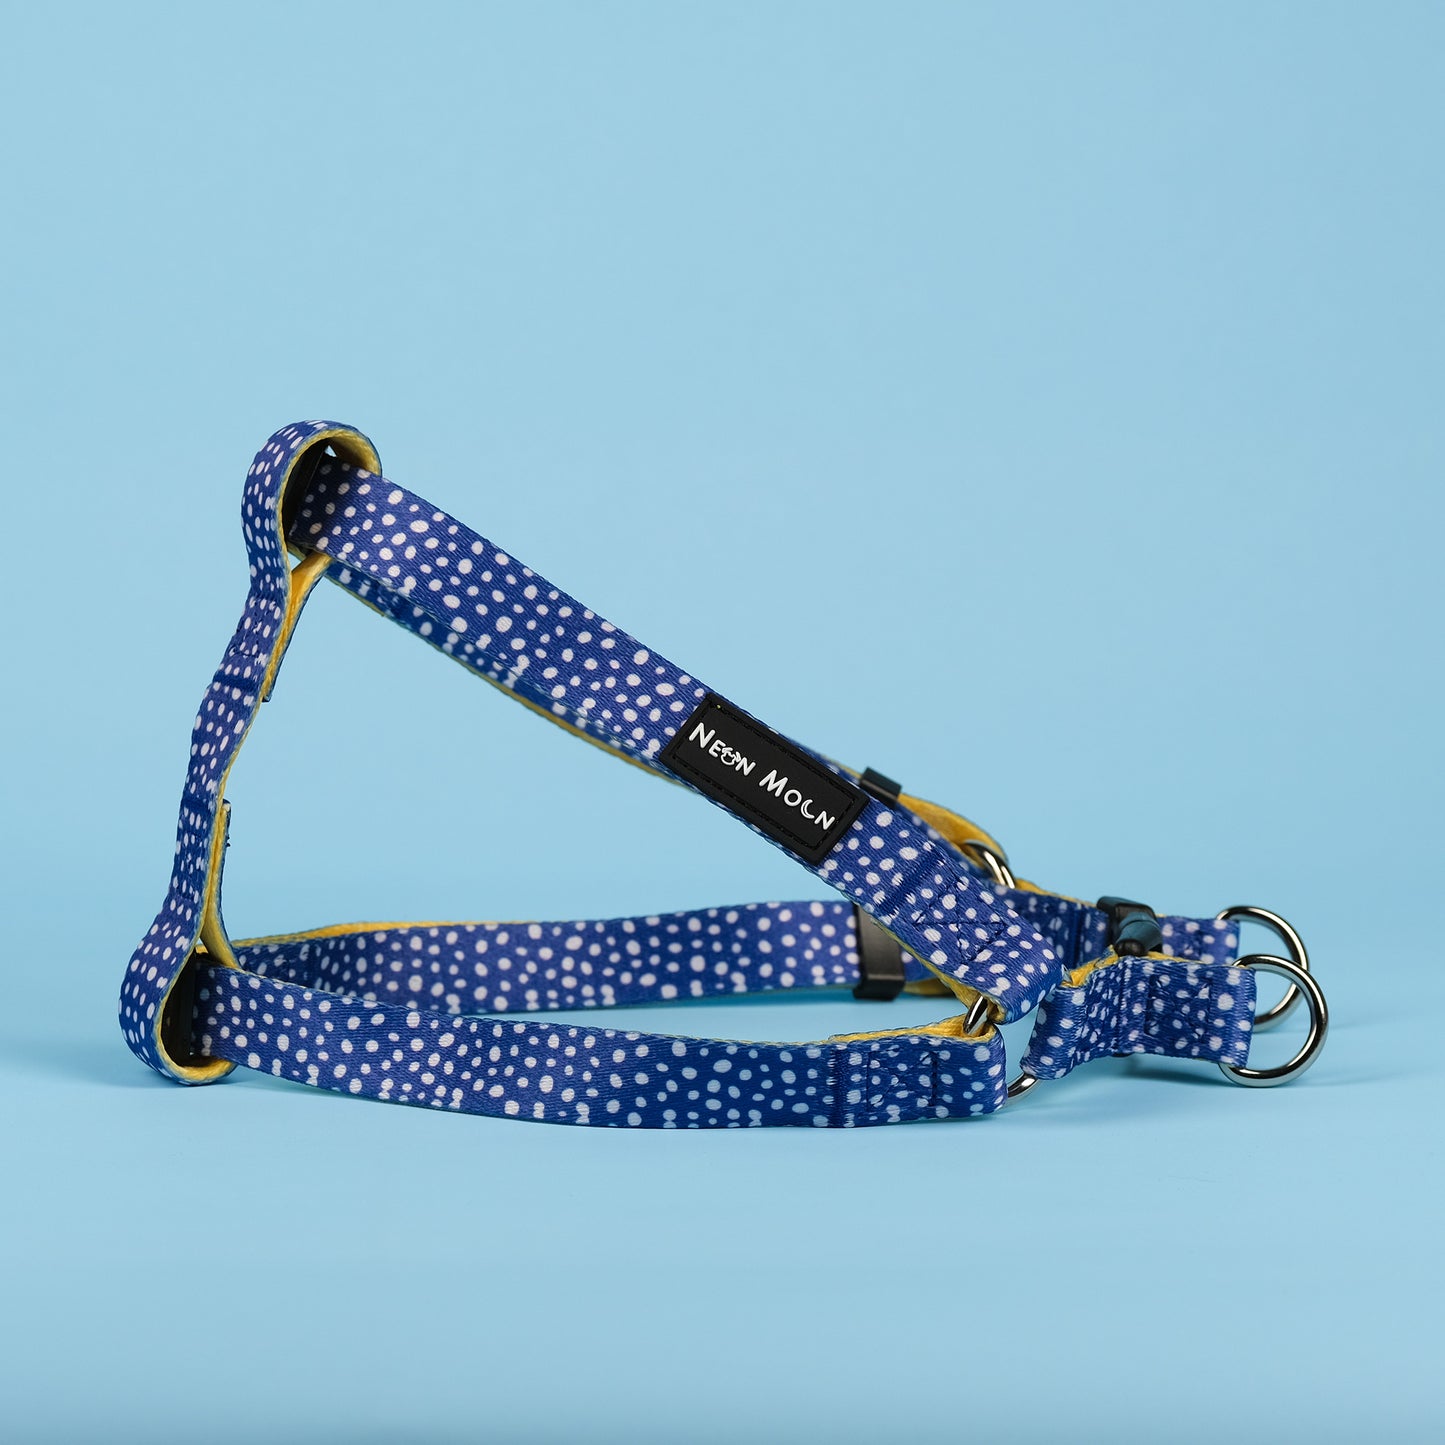 The Minnie polka dot blue step in harness - size medium